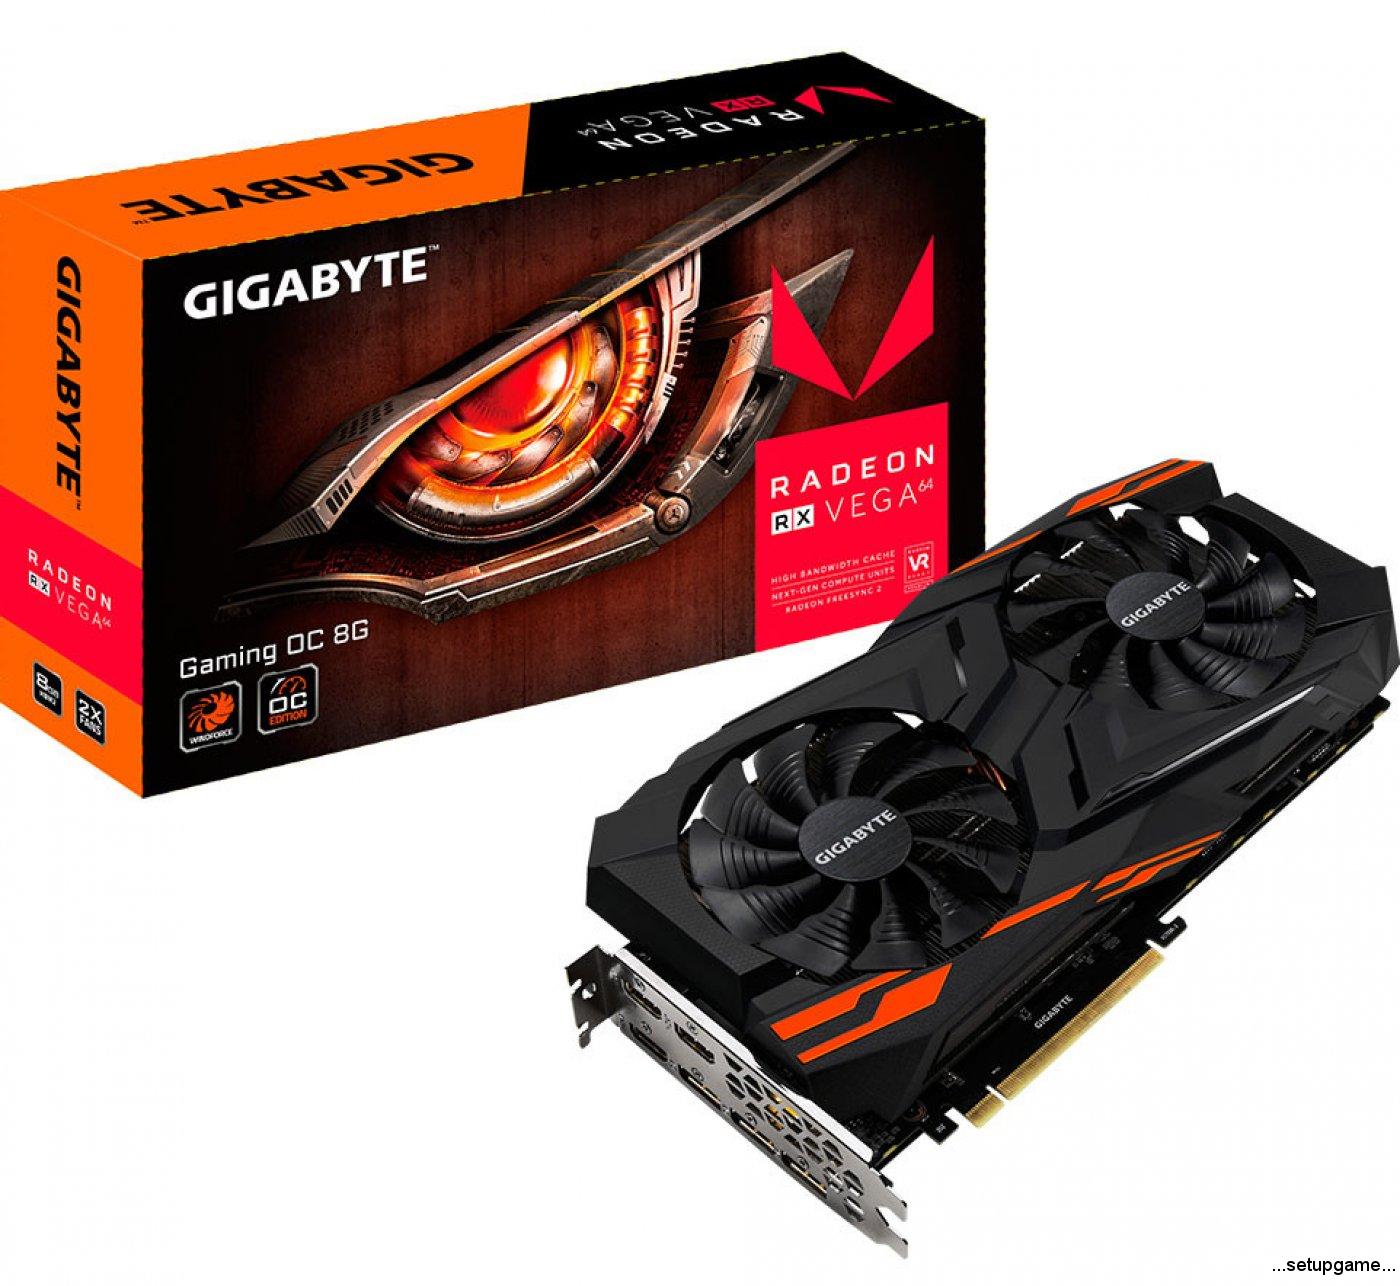 و در نهایت سفارشی های GIGABYTE Radeon RX Vega Gaming OC WindForce 2X